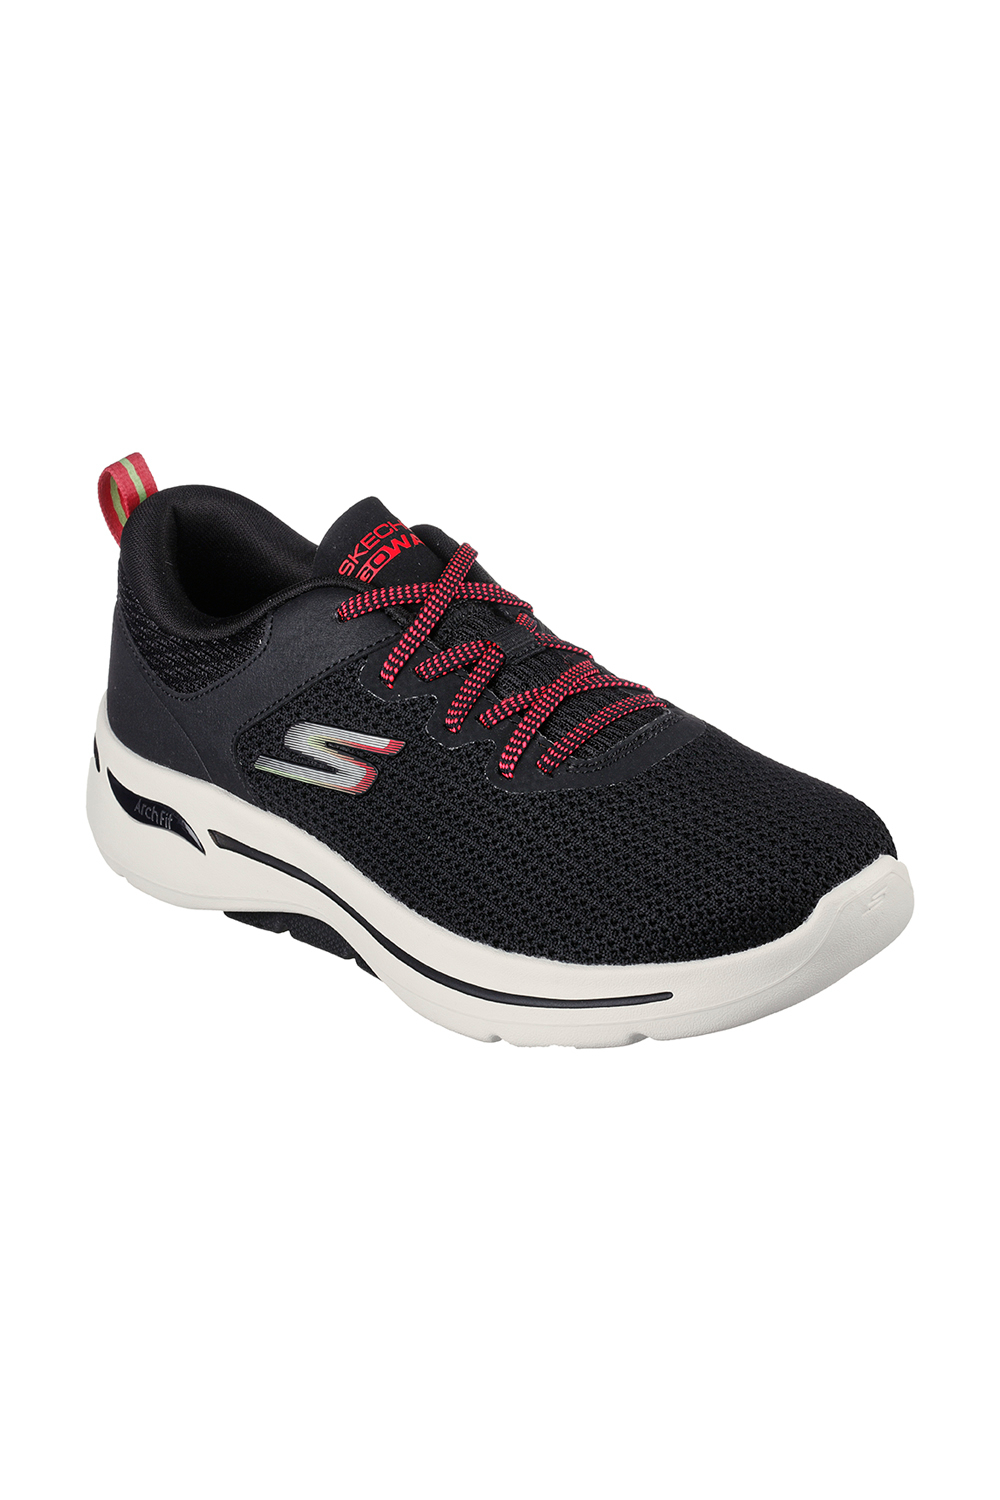 Skechers -124872-Bkmt-Go Walk Arch Fit-Women-Running-Shoe | Odel.lk